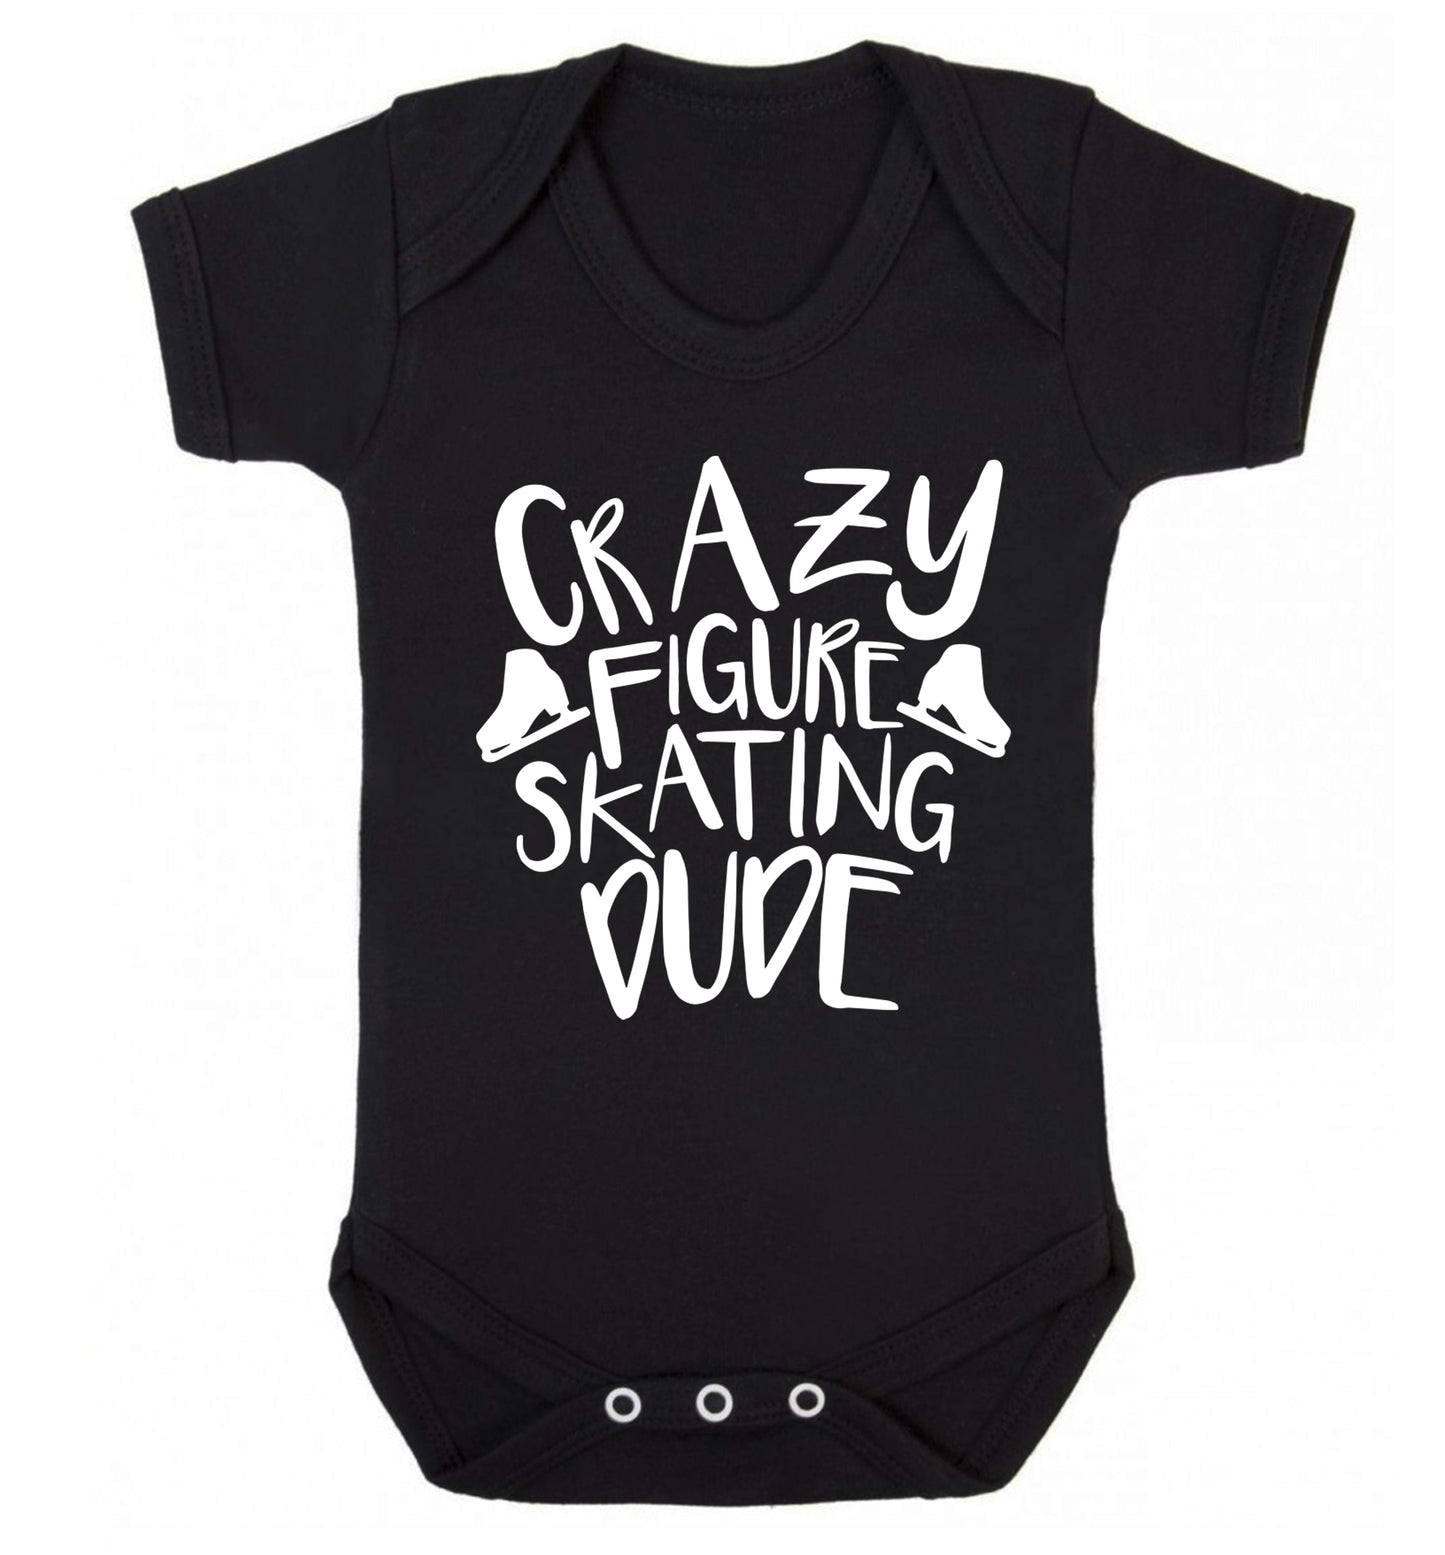 Crazy figure skating dude Baby Vest black 18-24 months